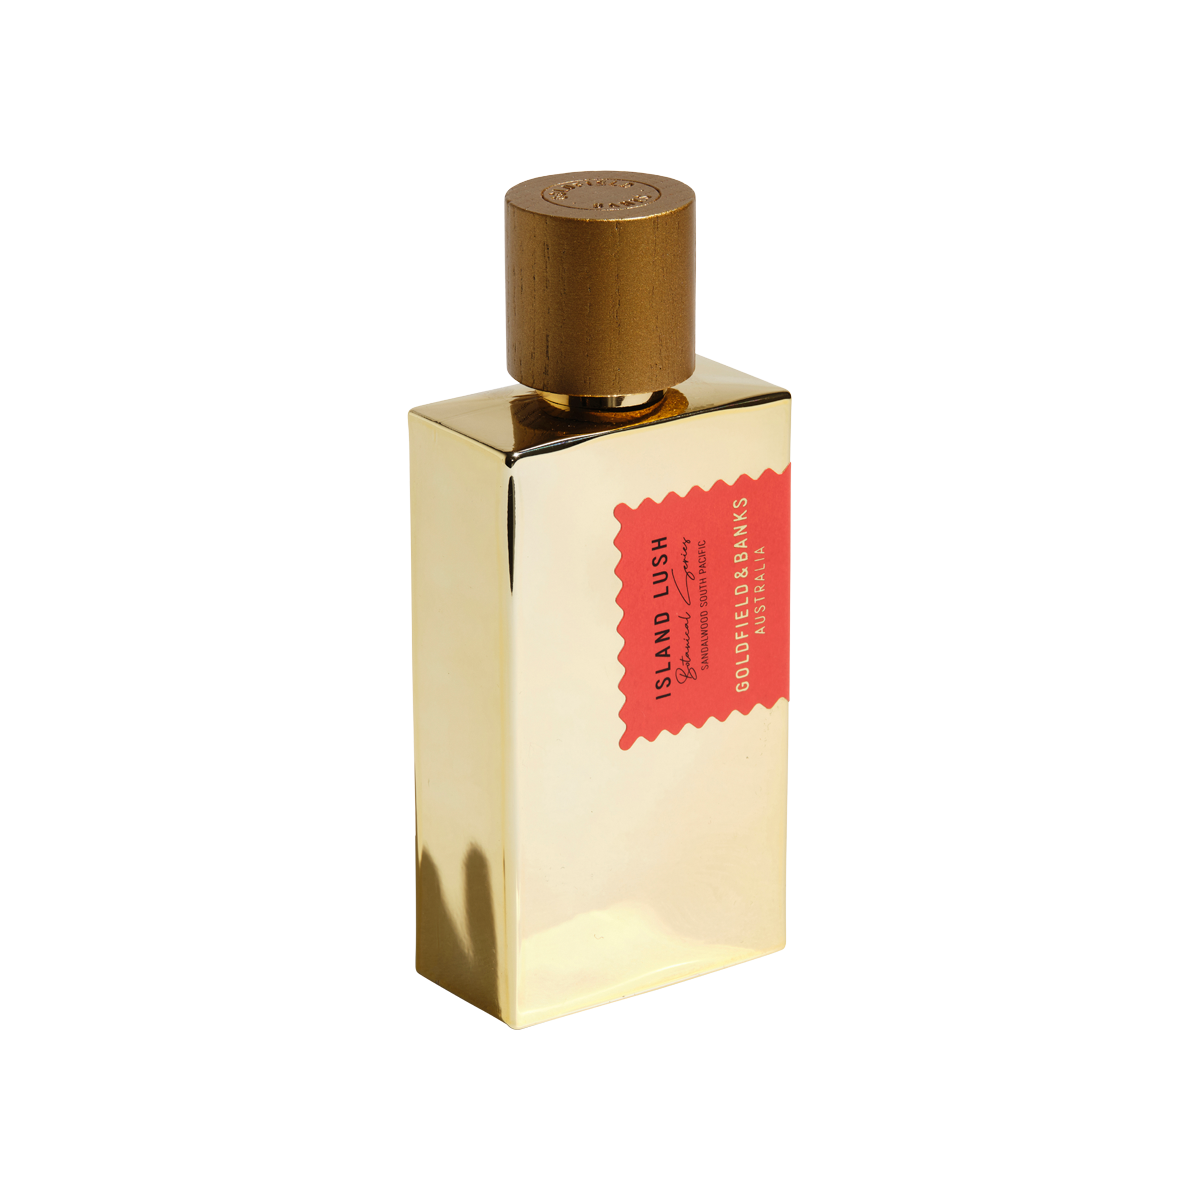 Goldfield & Banks - Island Lush Eau de Parfum